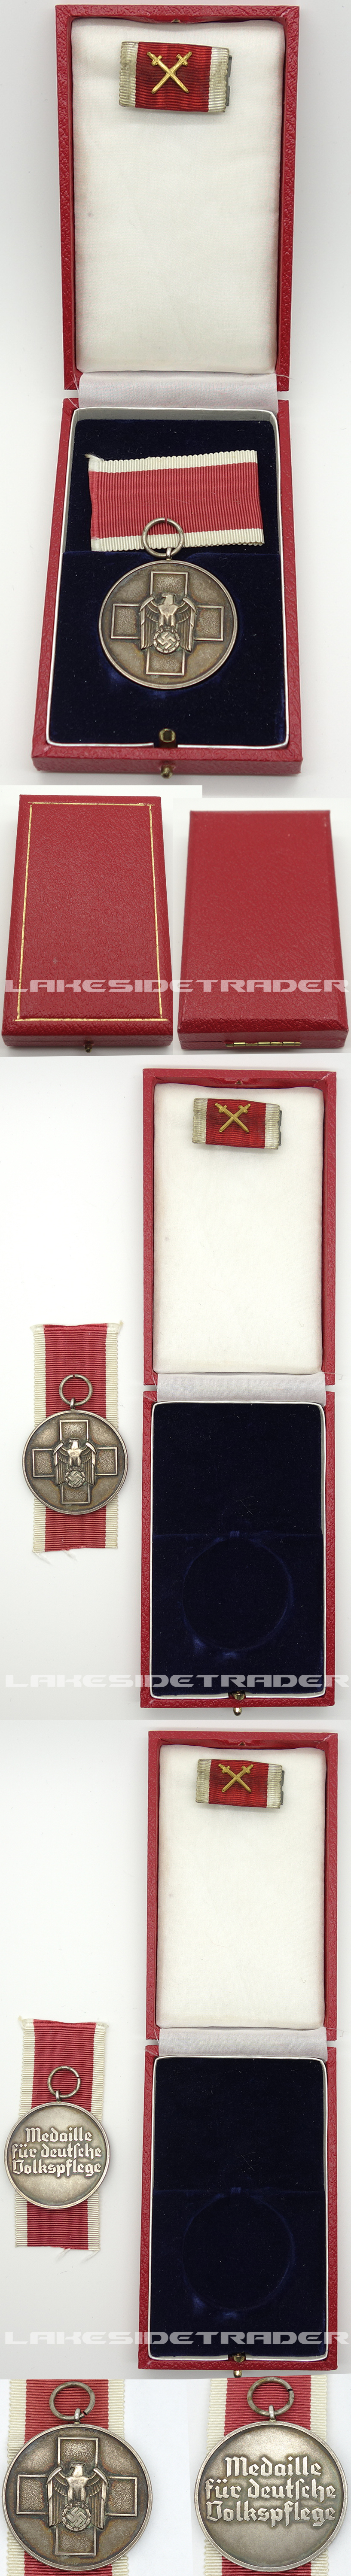 Cased Social Welfare Medal